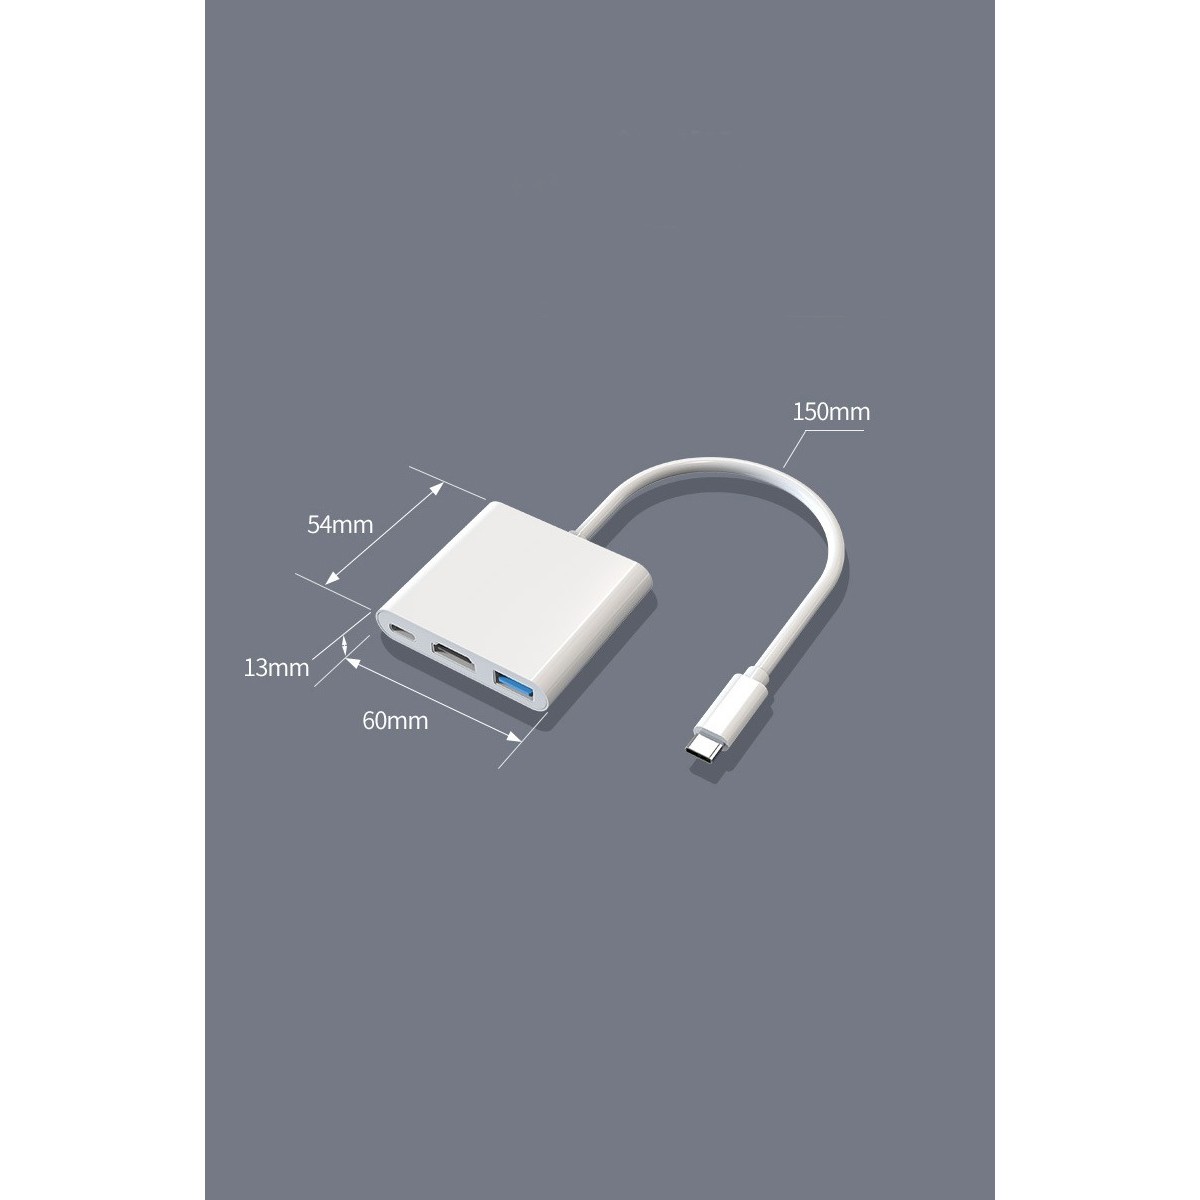 Adaptateur USB C vers HDMI 4K, Adaptateur Type C Hub vers HDMI Convertisseur avec Port USB 3.0 et Port de Charge C USB Compatibl